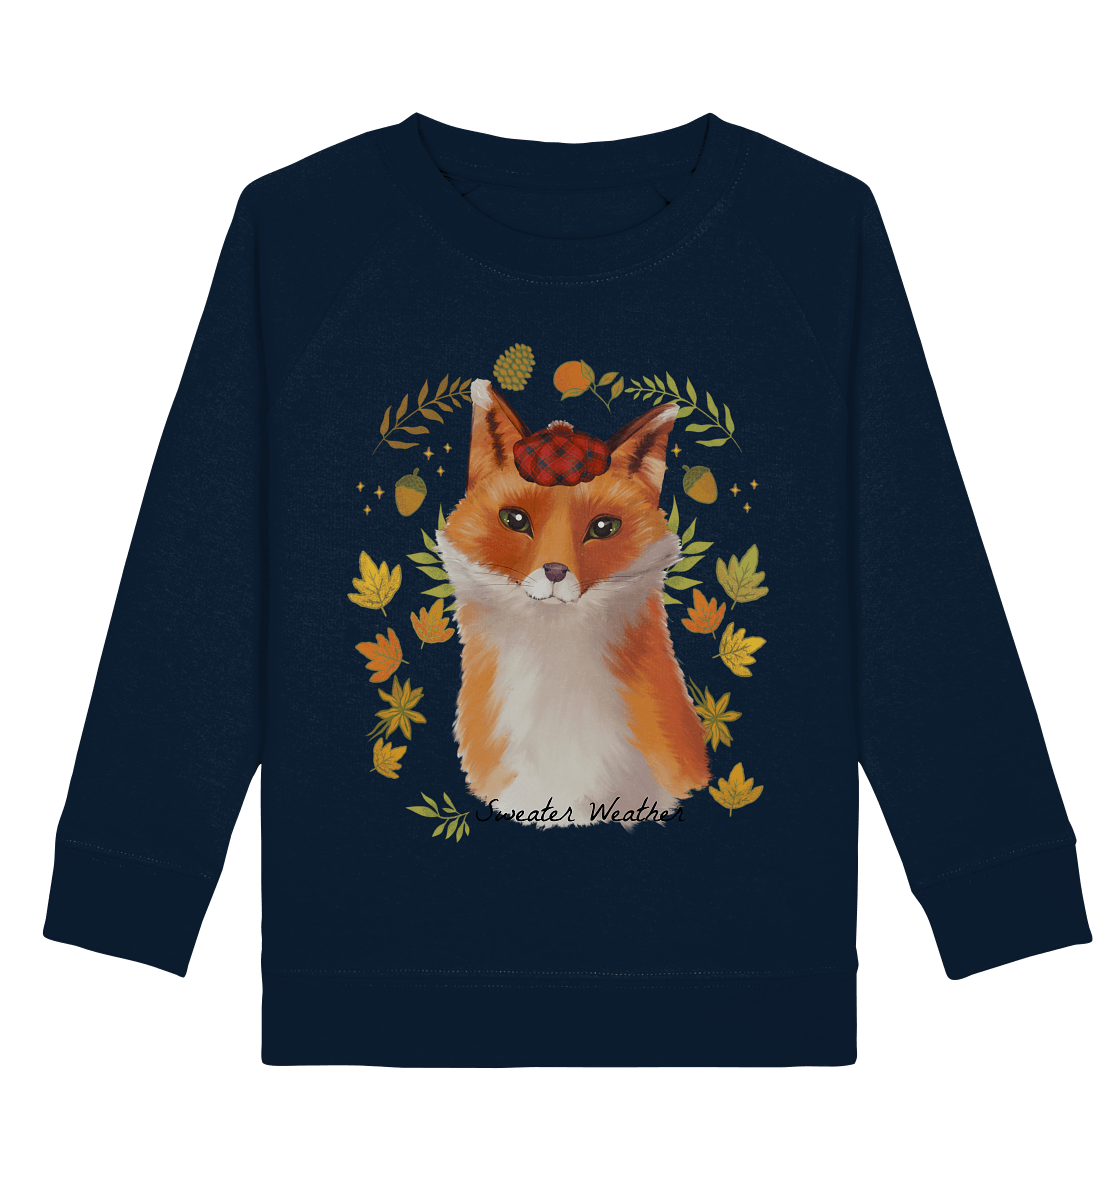 Fuchs im Herbst Kinder Sweatshirt in navy blau mit niedlichen Fuchs Print